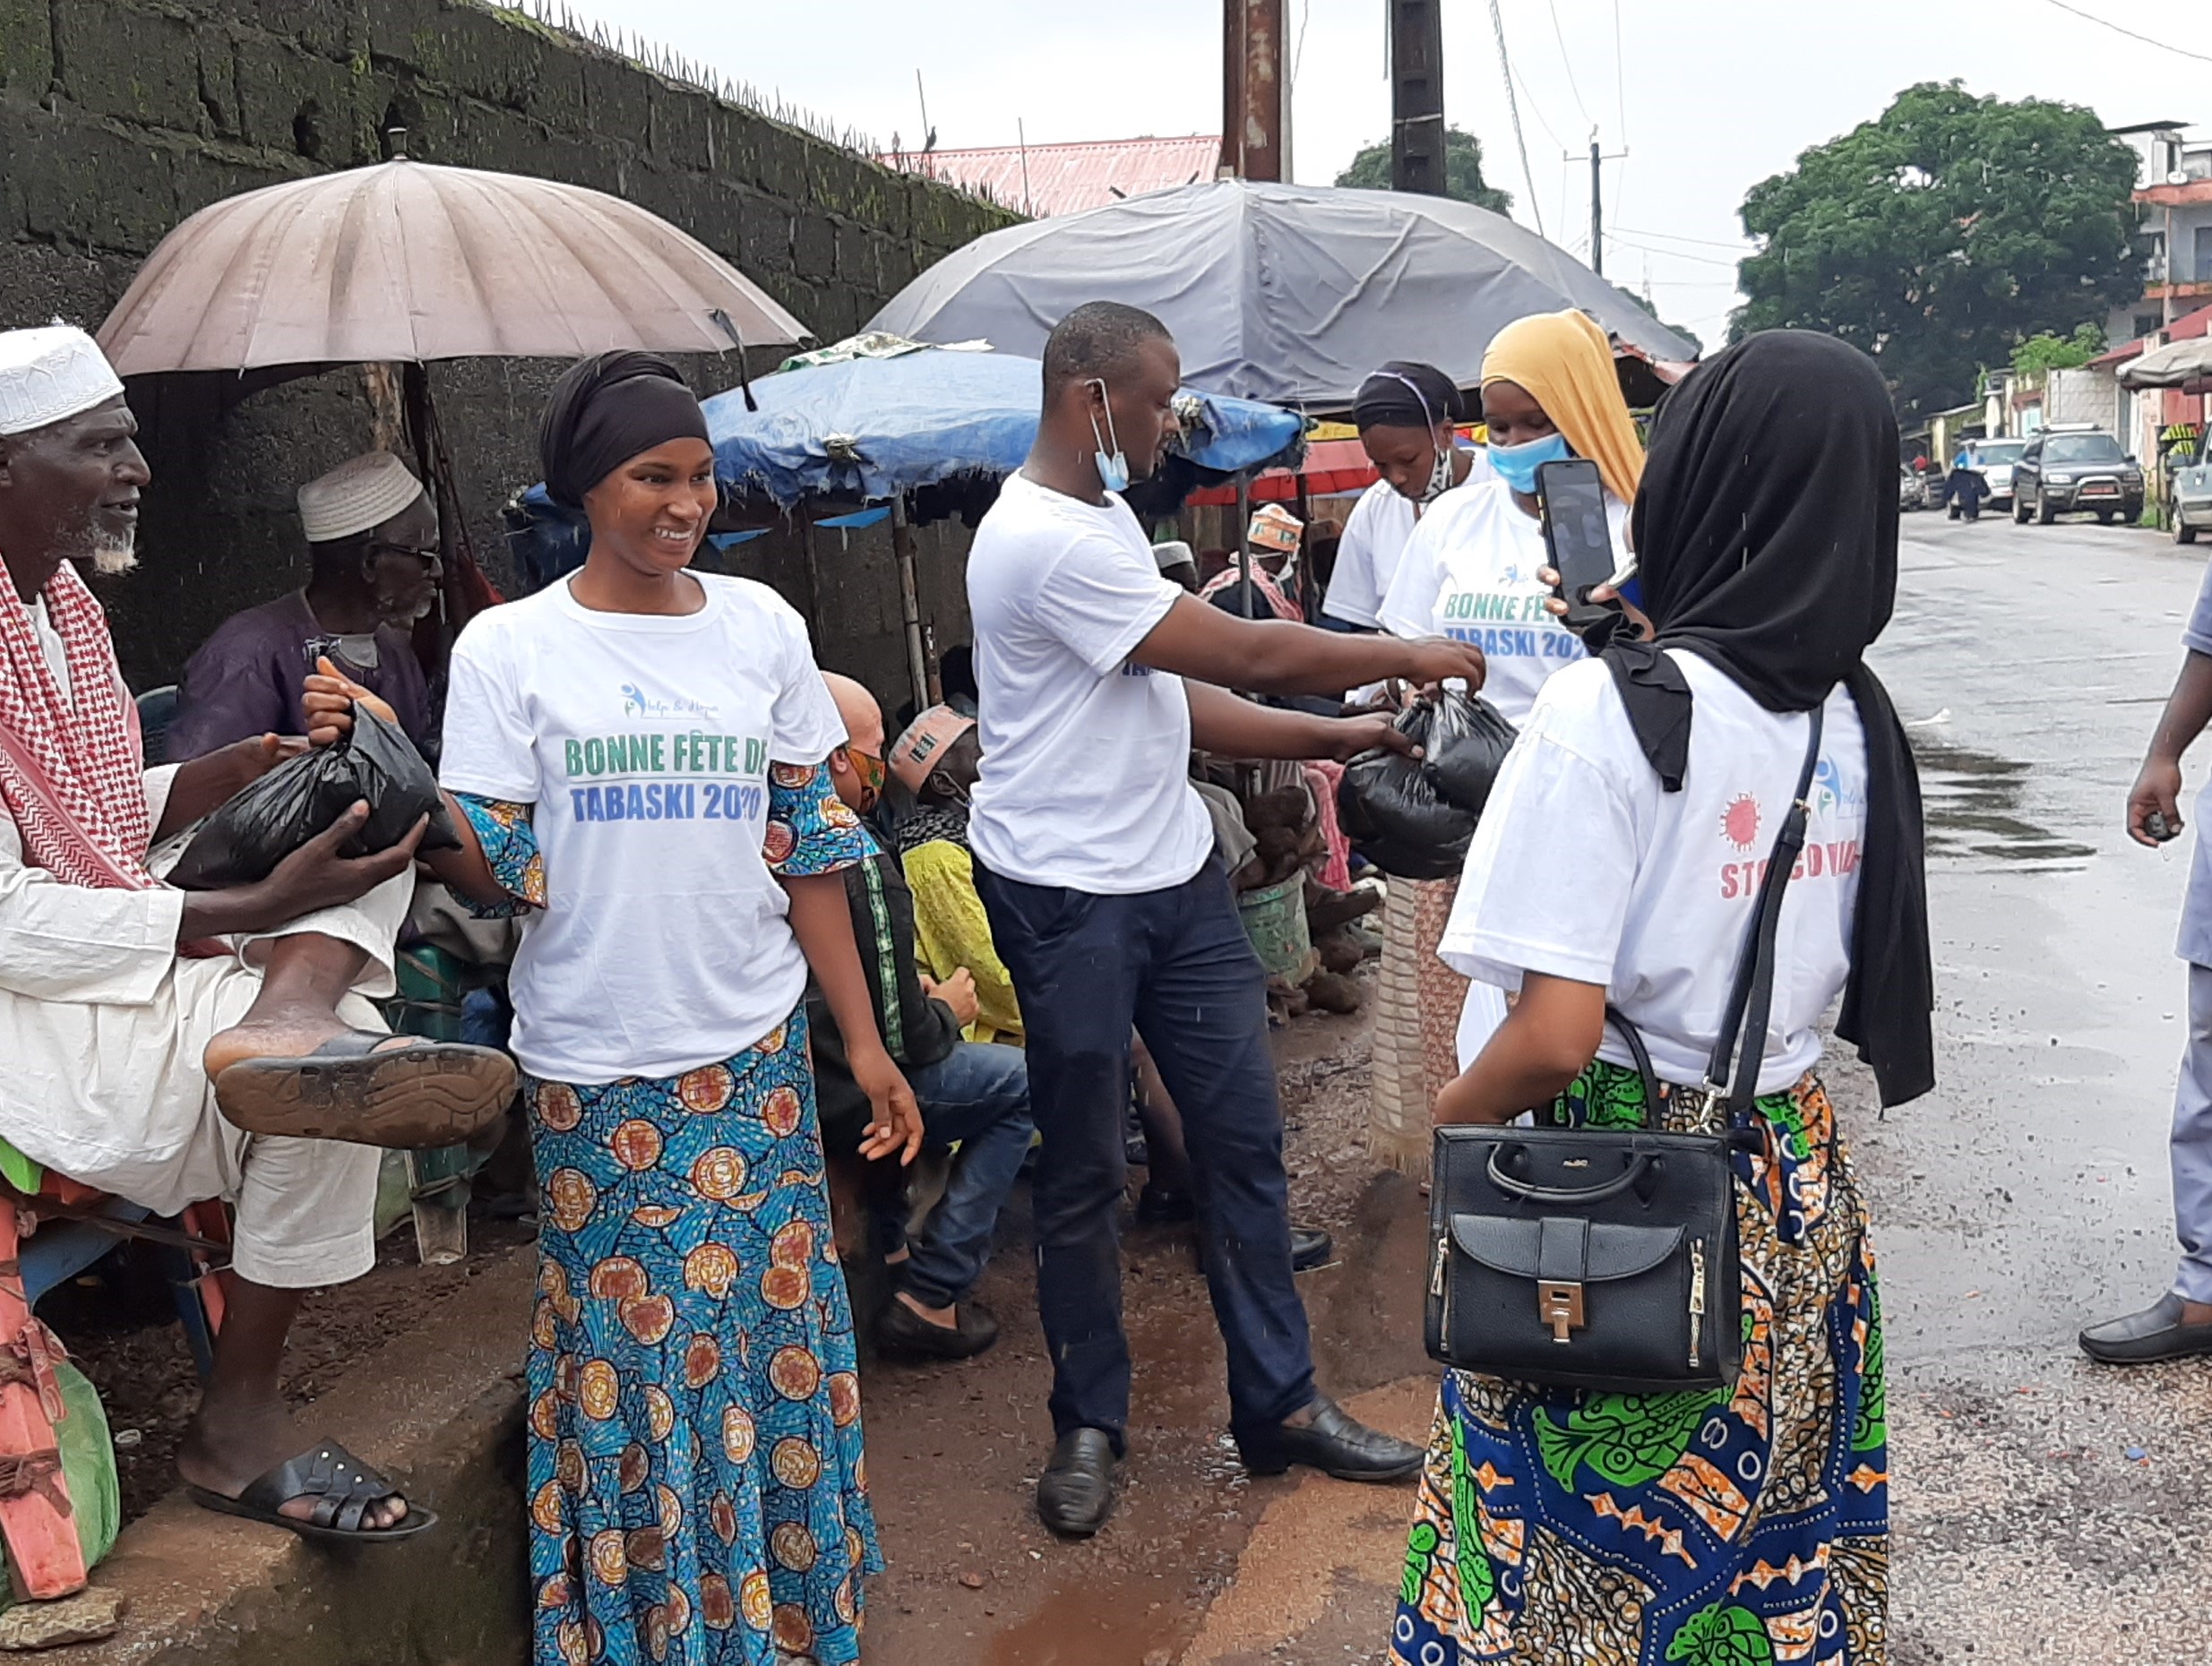 L’ONG Help & hope offre des vivres aux personnes démunies à Conakry